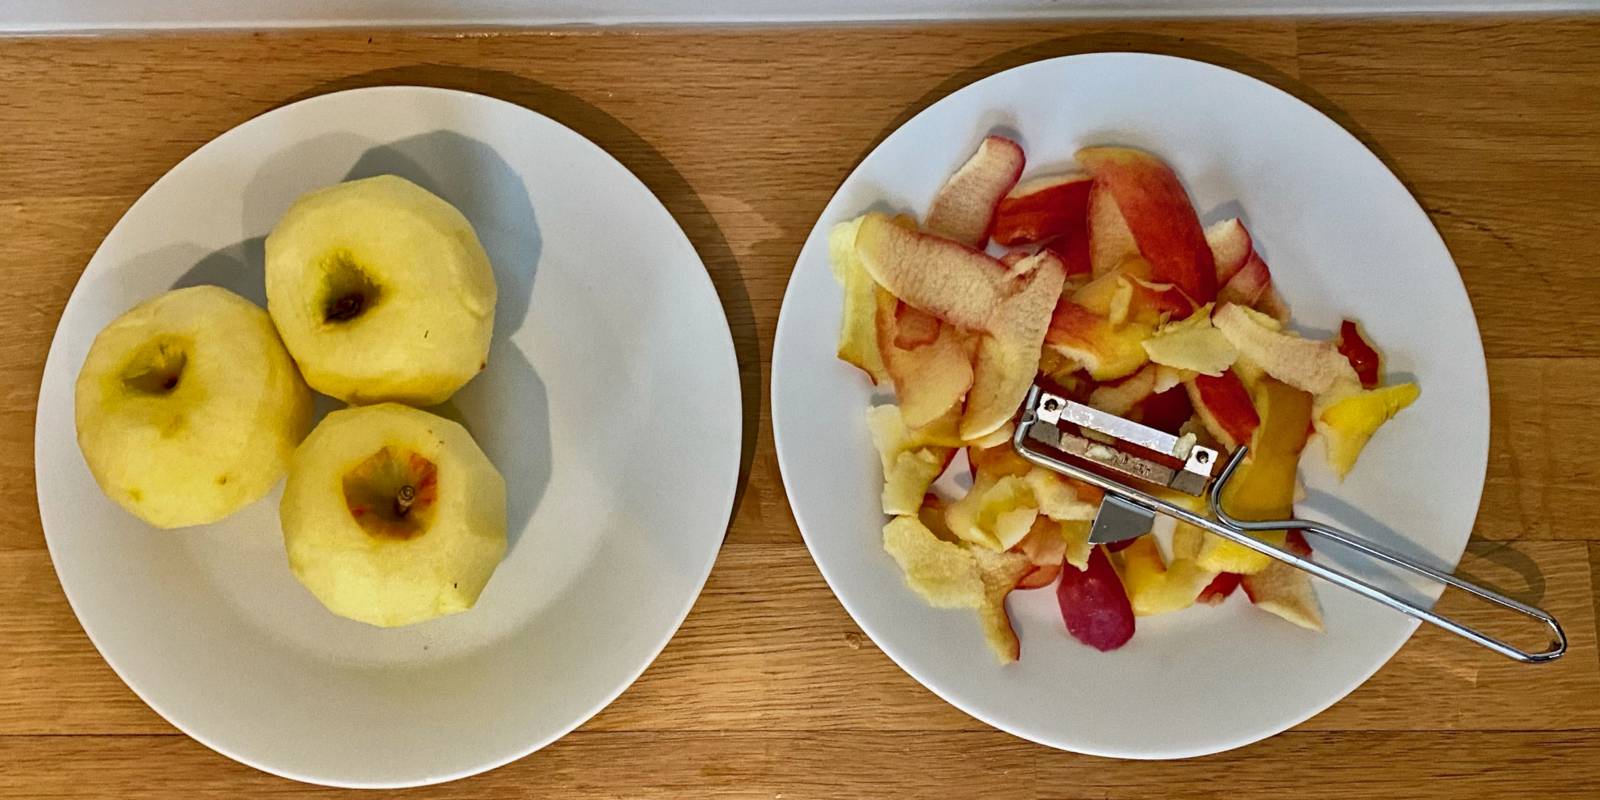 Zwei Teller stehen auf einem Tisch. Auf dem linken Teller liegen drei geschälte Äpfel, auf dem rechten Teller liegen Apfelschalen und ein Schäler.